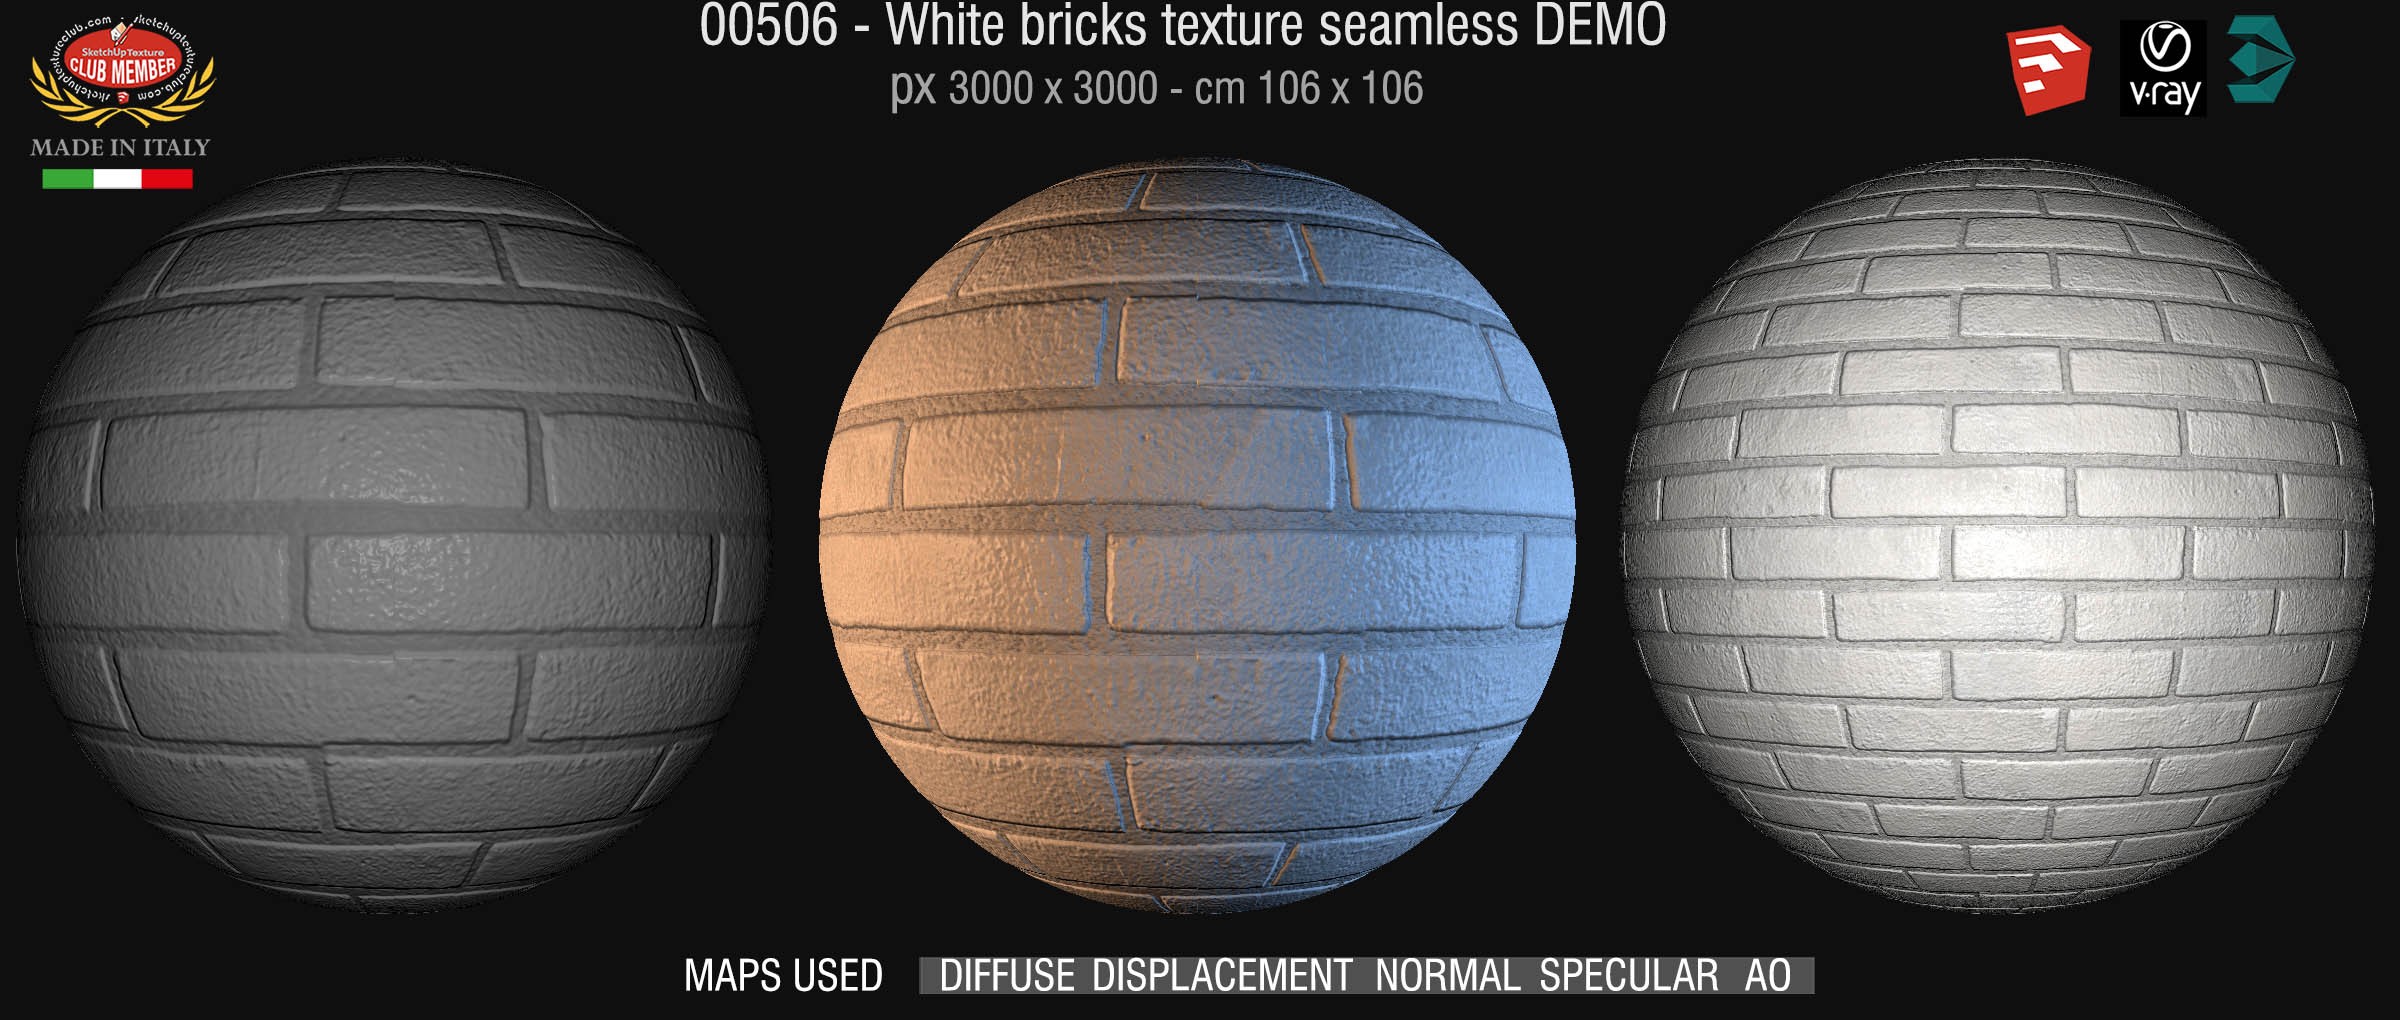 00506 White bricks texture seamless + maps DEMO